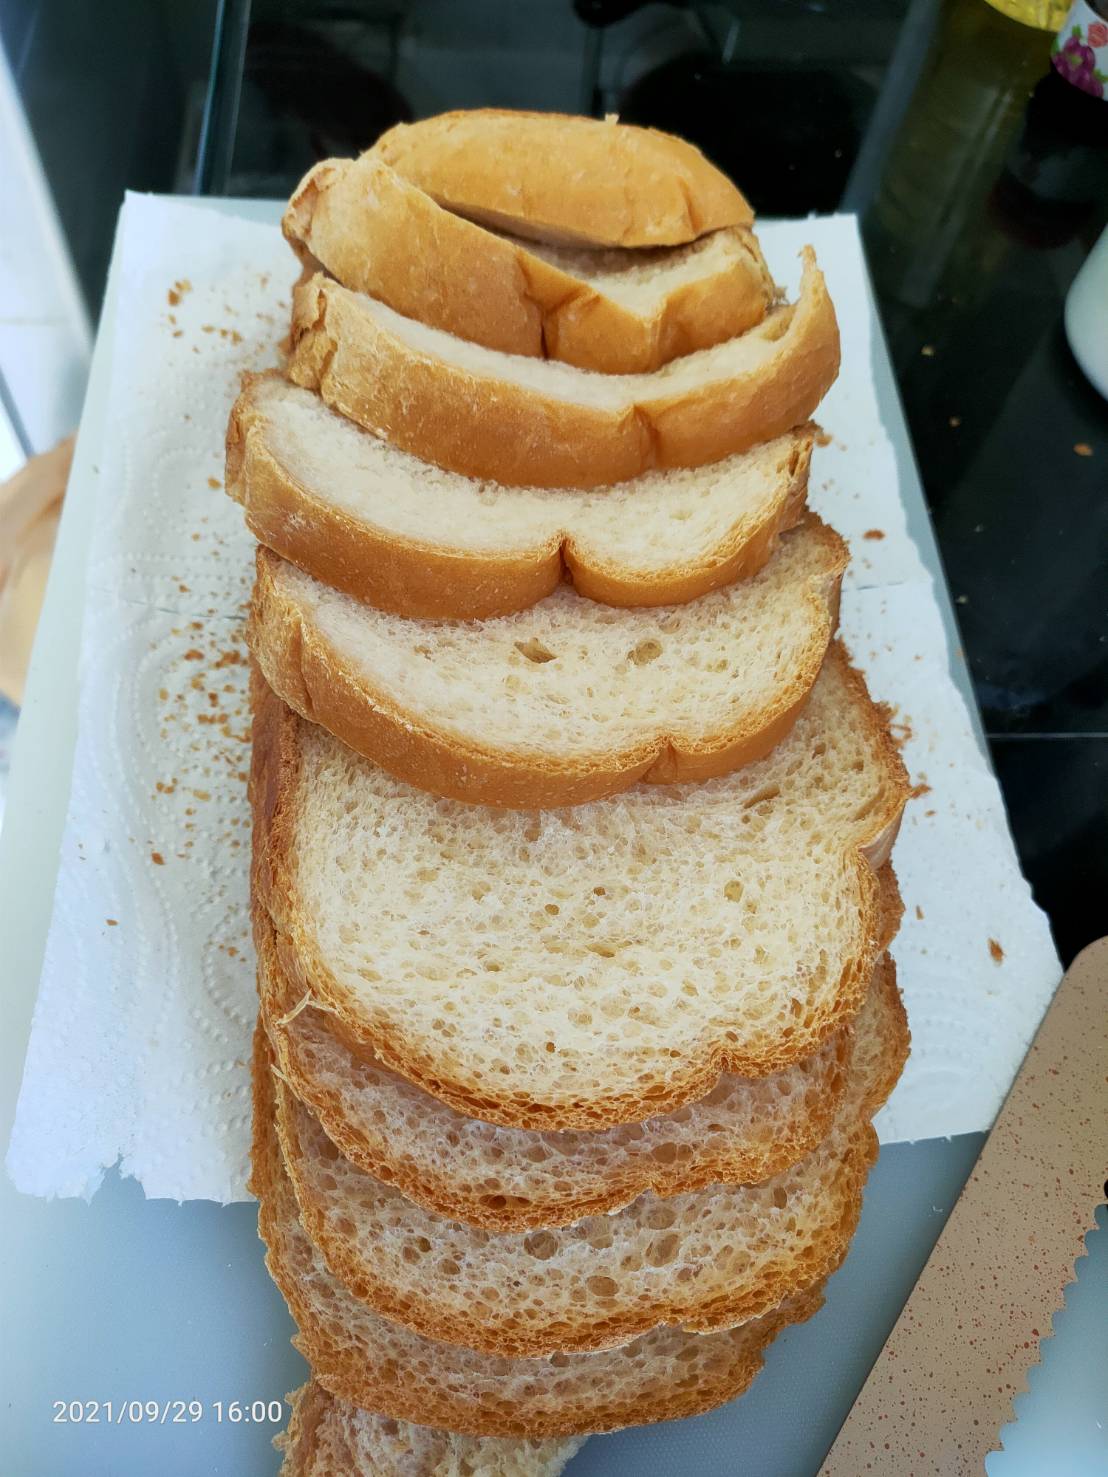 หั่นขนมปังอบเอง
การหั่นขนมปังเป็นแผ่นๆ